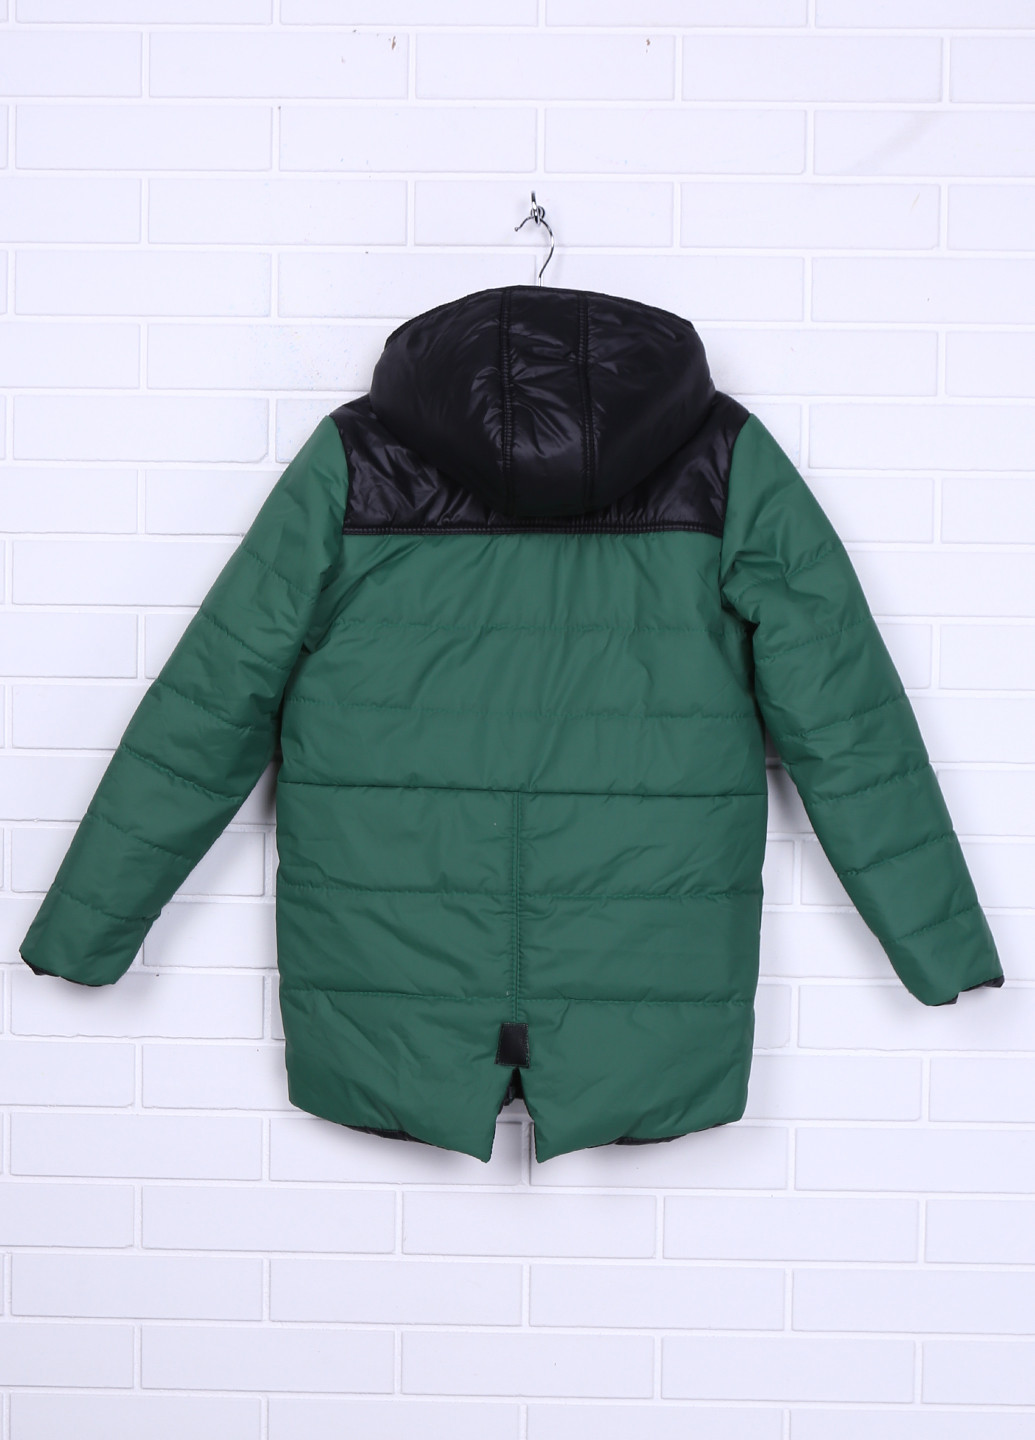 Зеленая демисезонная куртка Одягайко